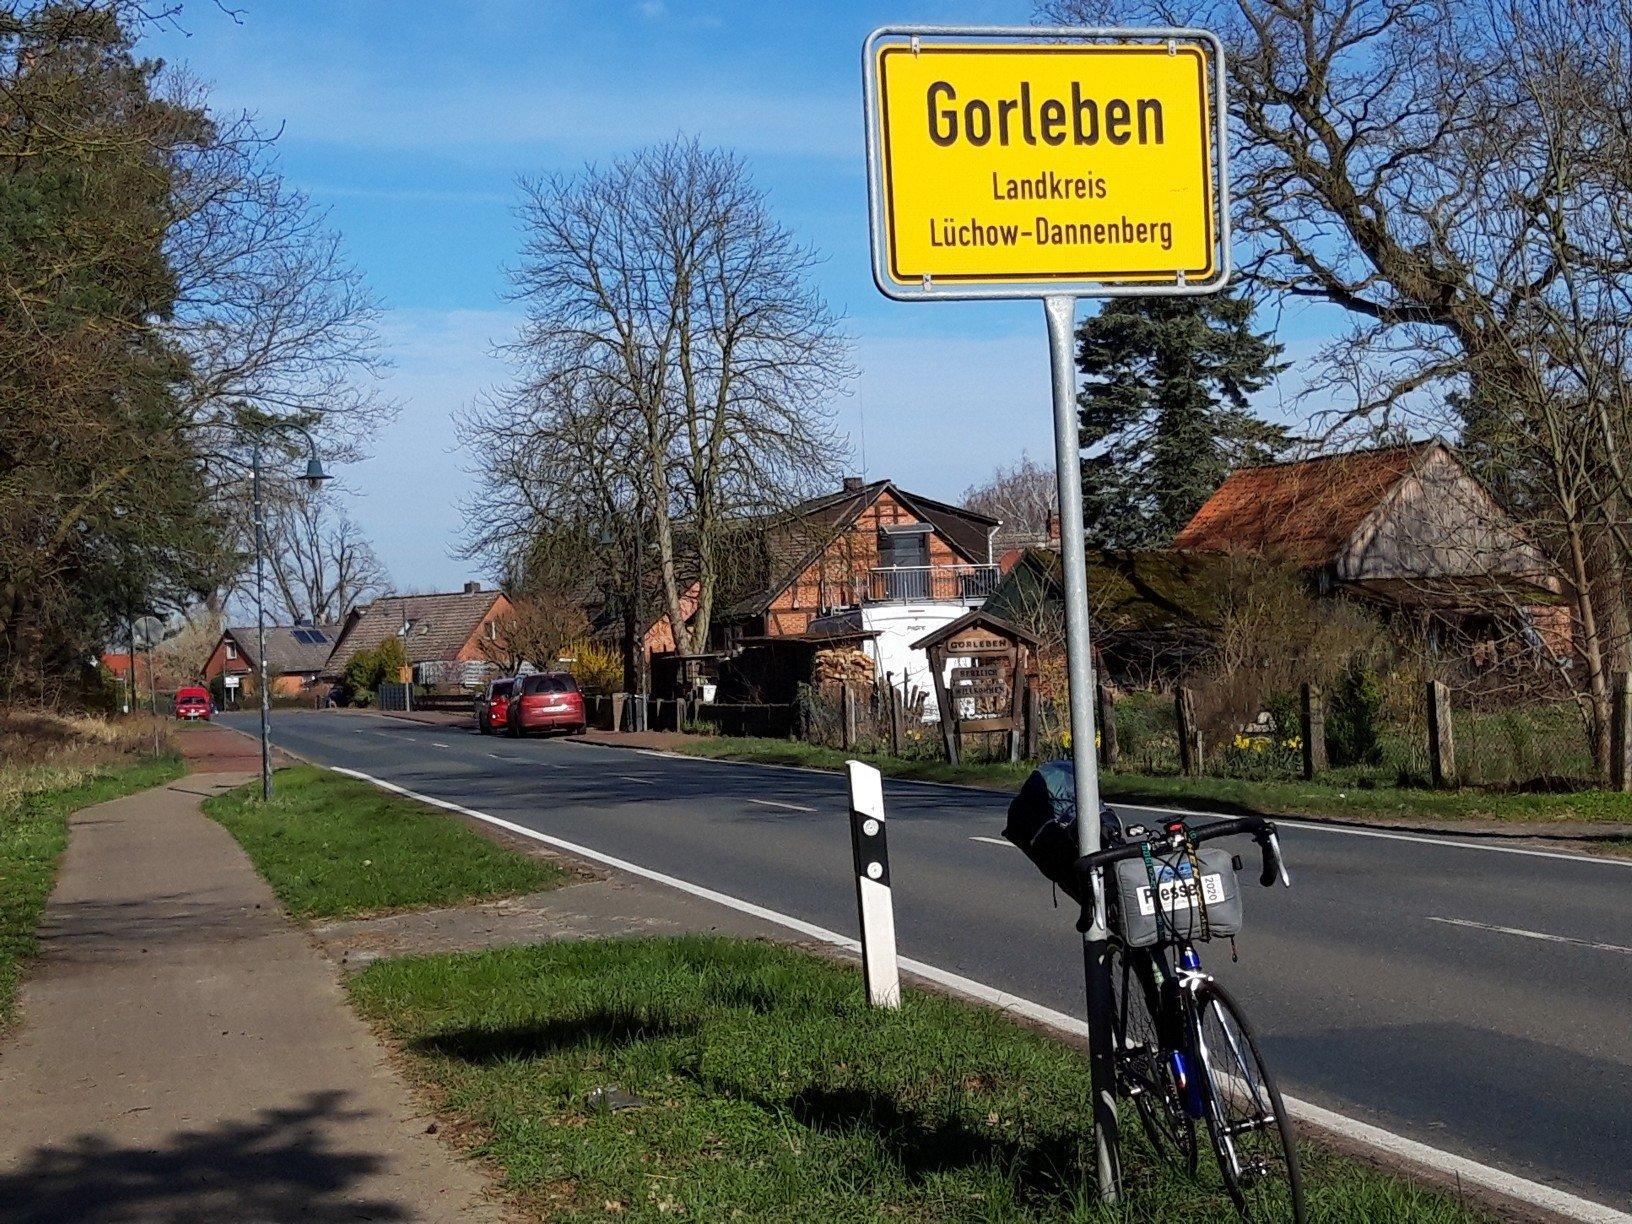 Das Rad des Autors lehnt am östlichen Ortsschuld von Gorleben; dahinter sind Häuser sowie die leere Dorfstraße zu erkennen, an der einige wenige Autos parken.